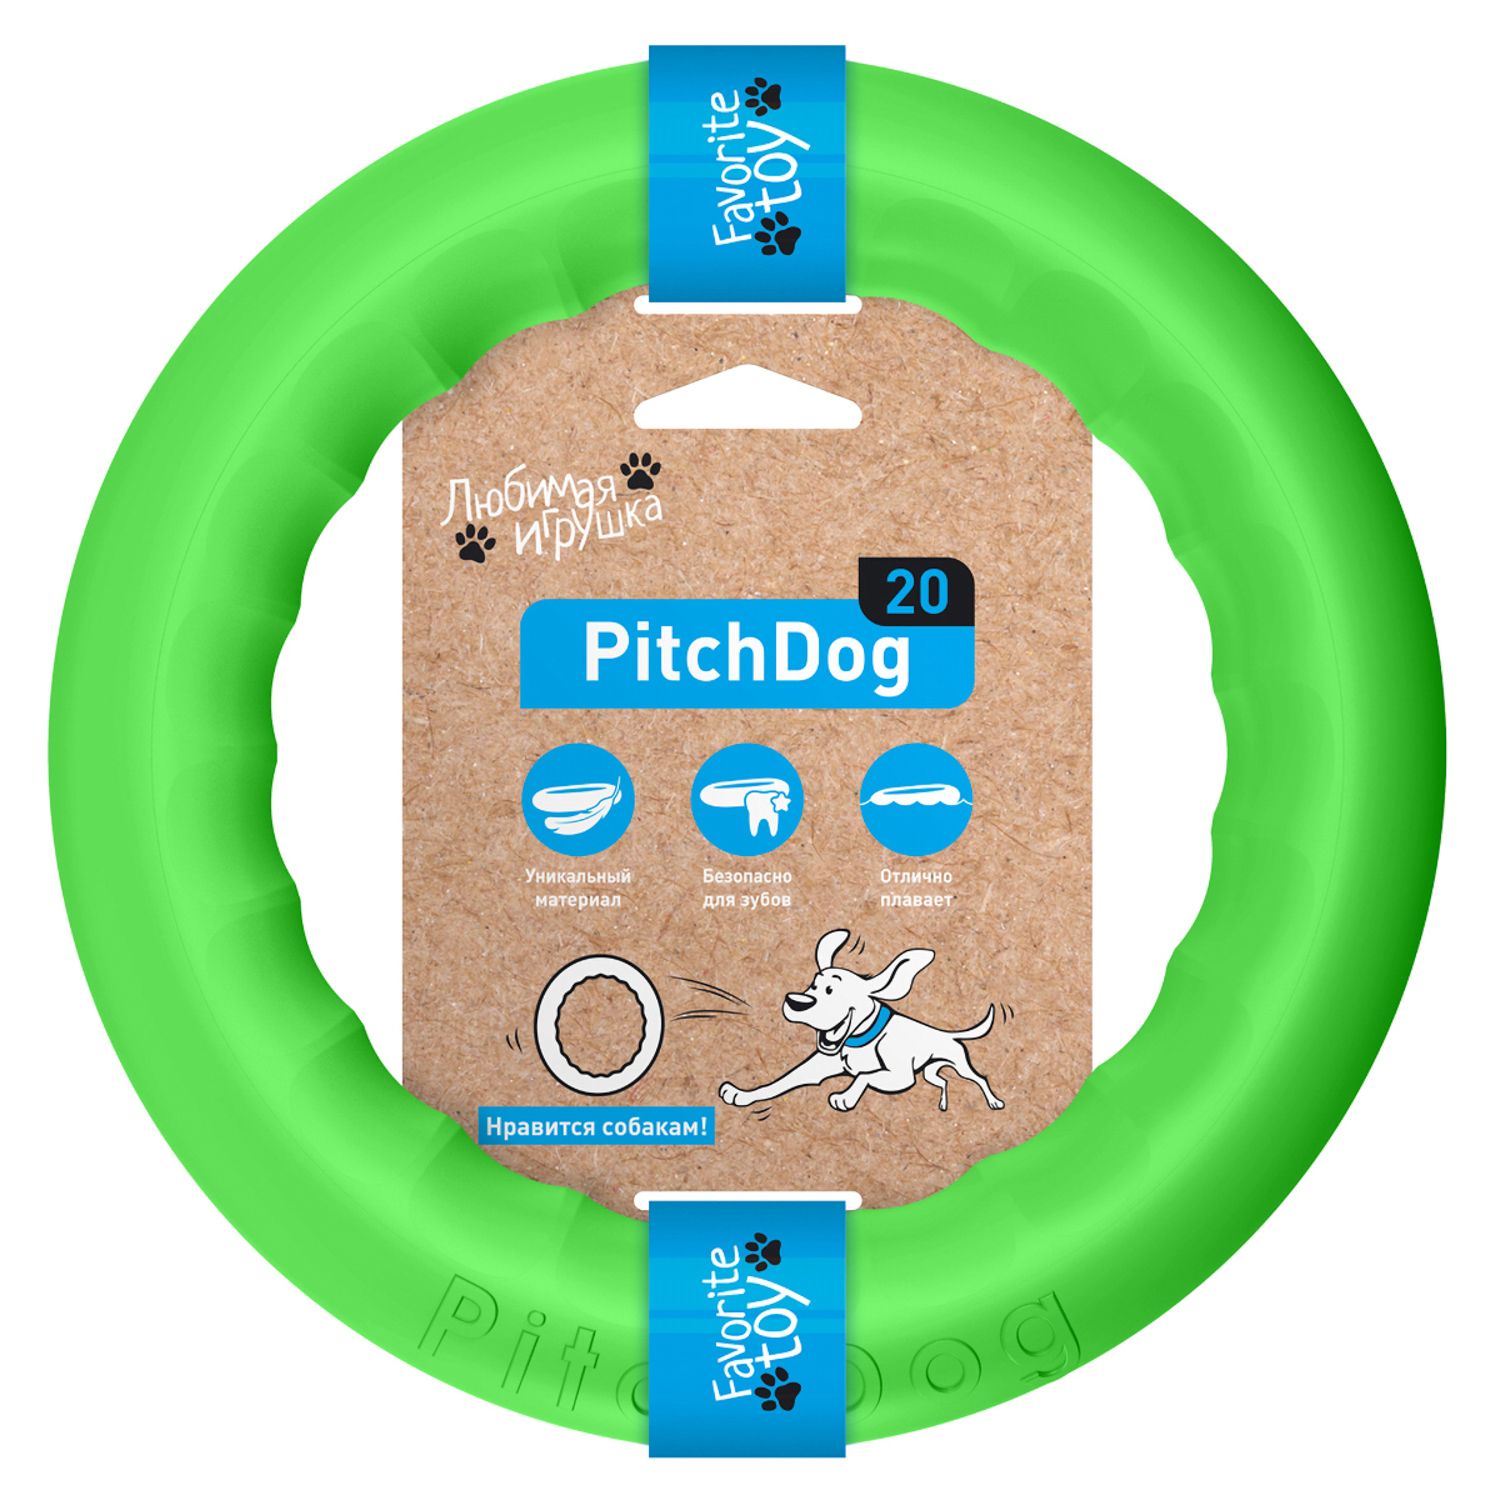 PitchDog 20 - Игровое кольцо для апортировки d 20 зеленое